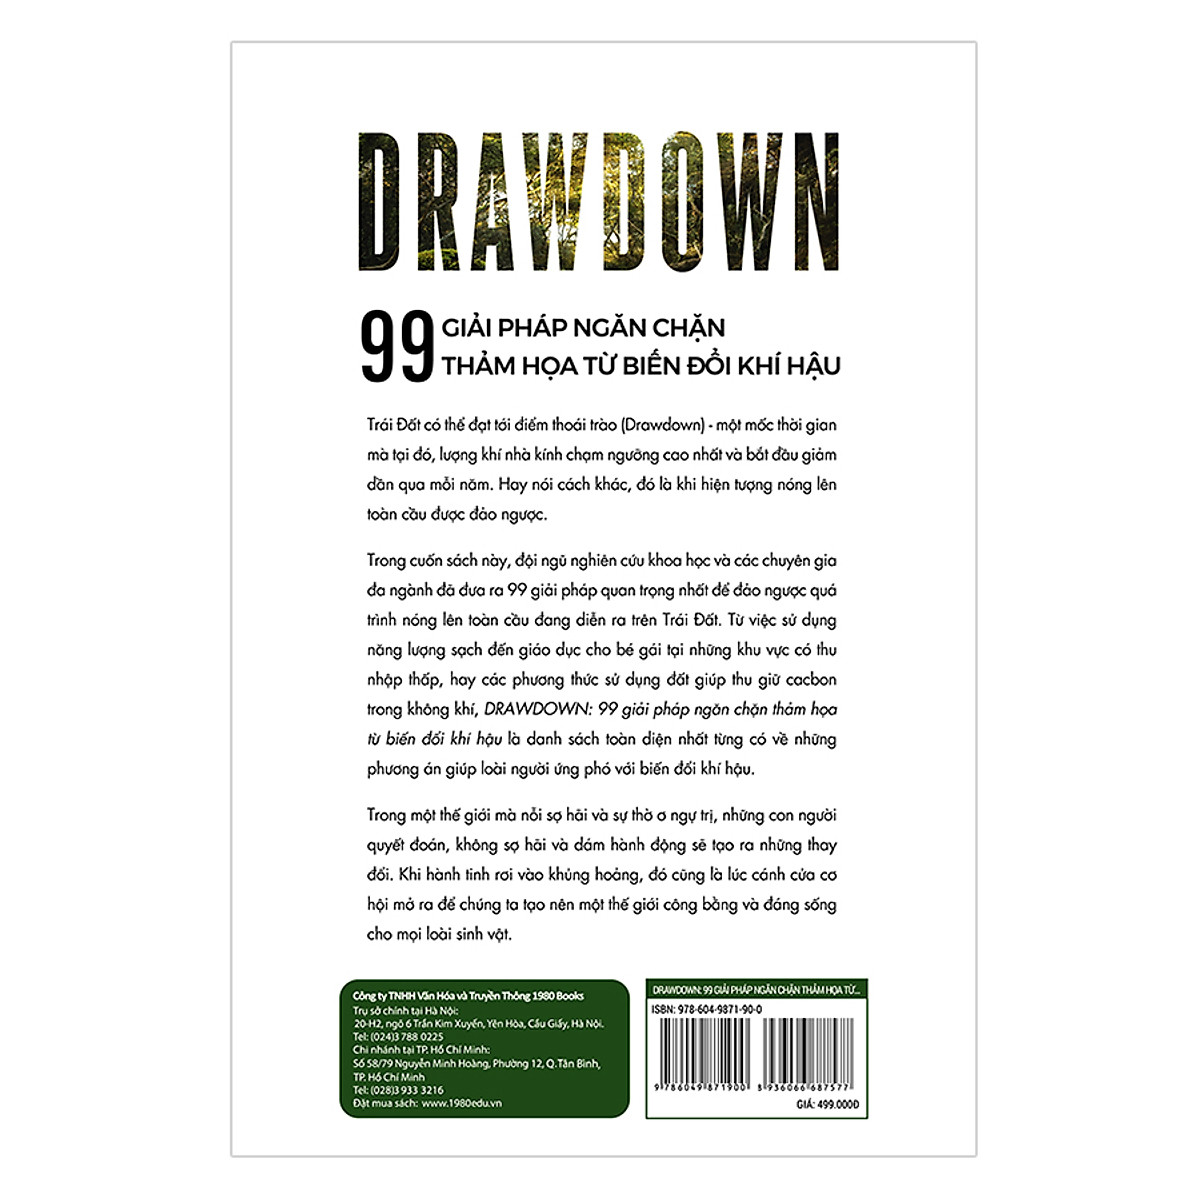 Drawdown - 99 Giải Pháp Ngăn Chặn Thảm Họa Từ Biến Đổi Khí Hậu PDF